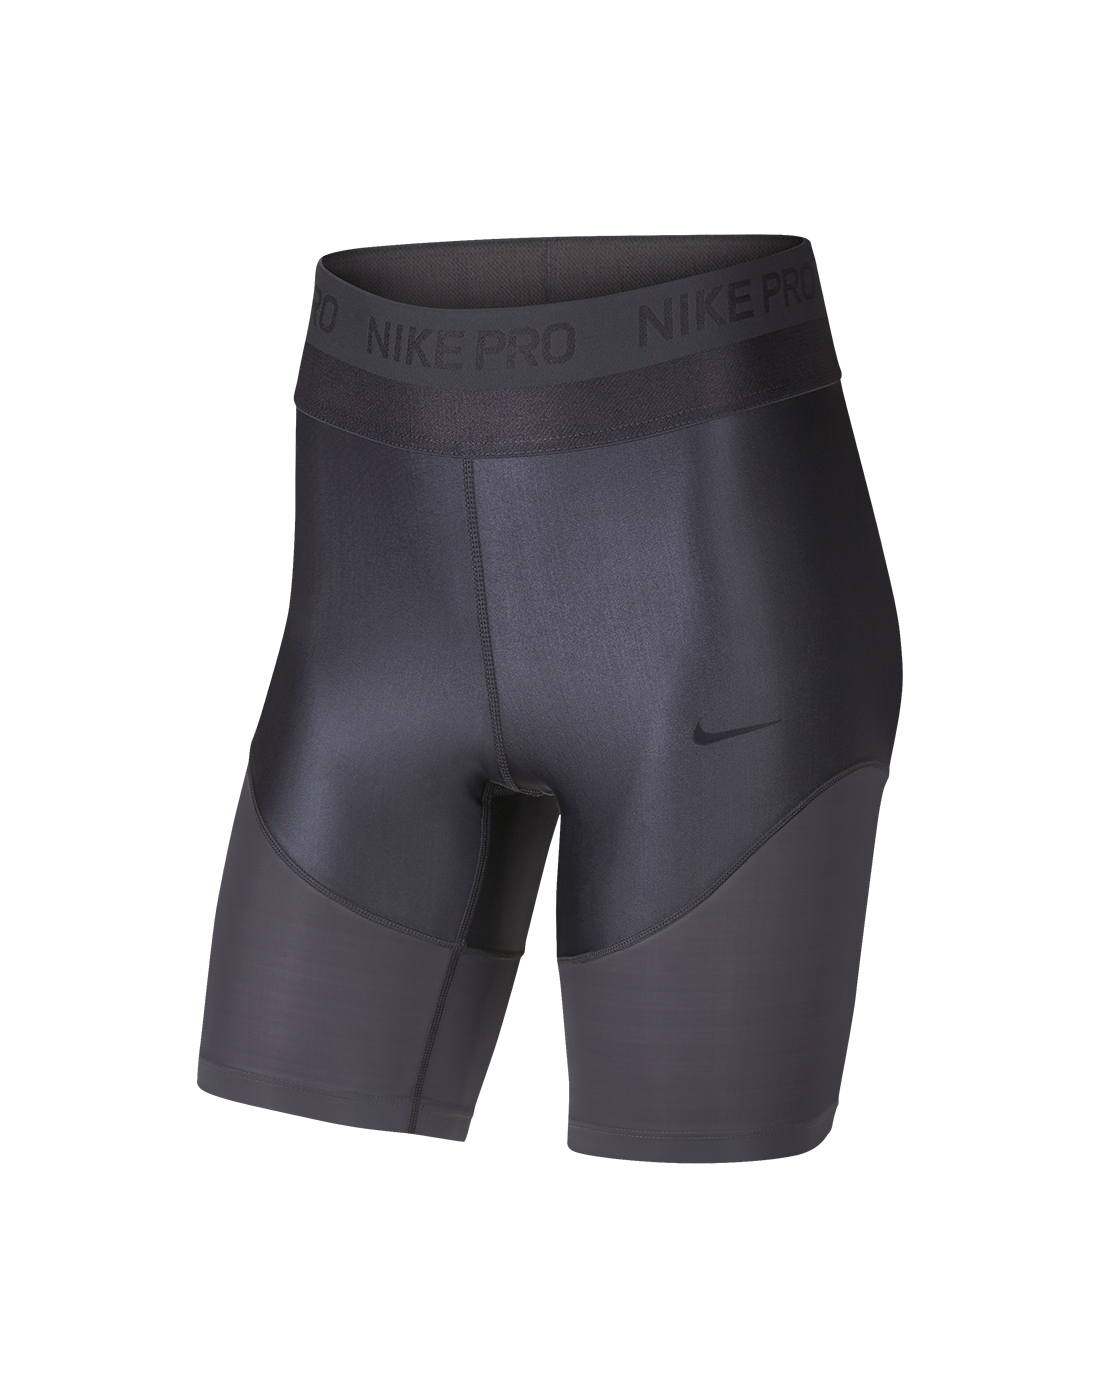 8 inch nike pro shorts